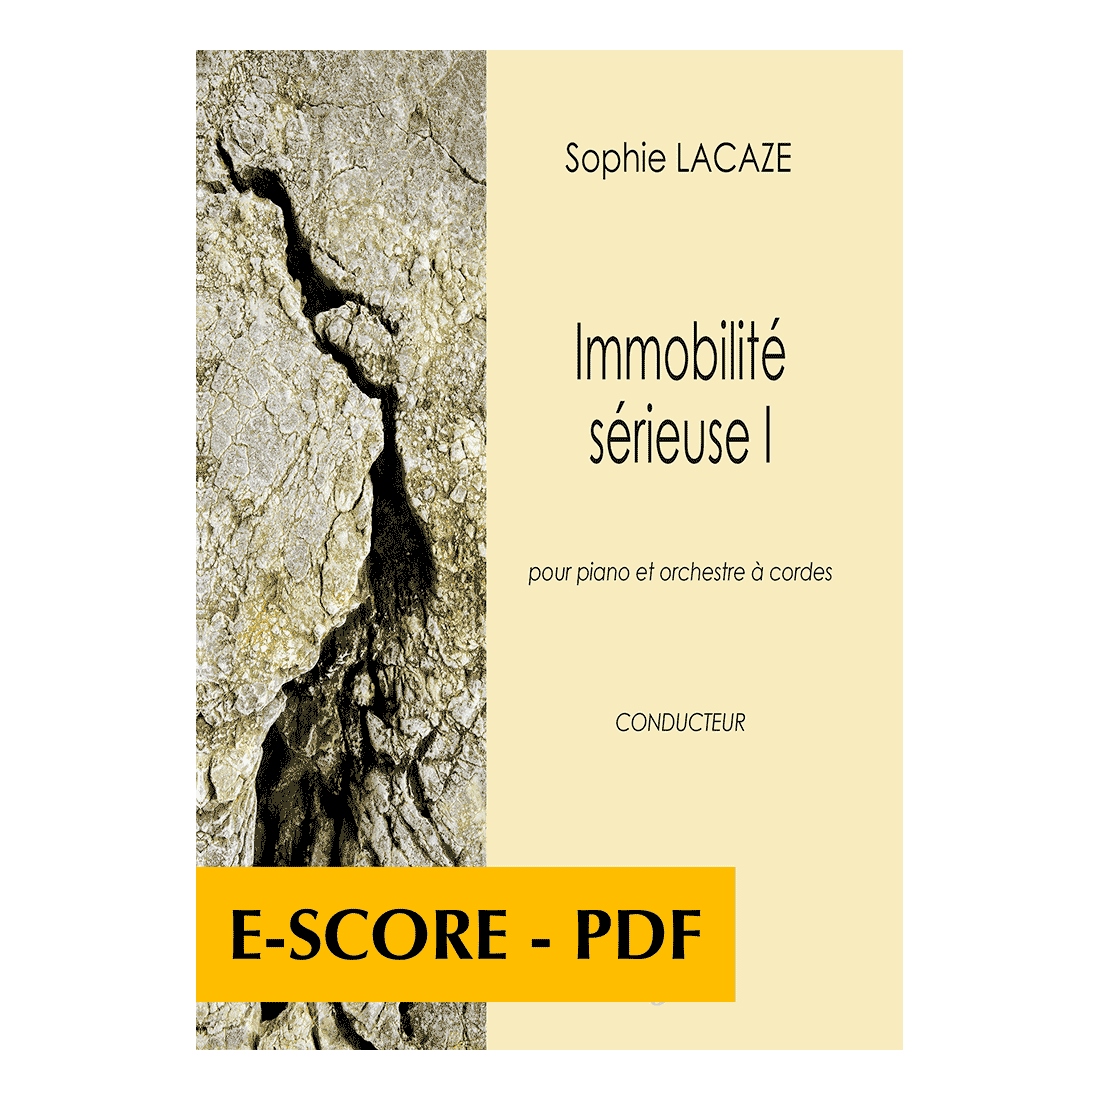 Immobilité sérieuse I pour piano et orchestre à cordes (CONDUCTEUR) - E-score PDF